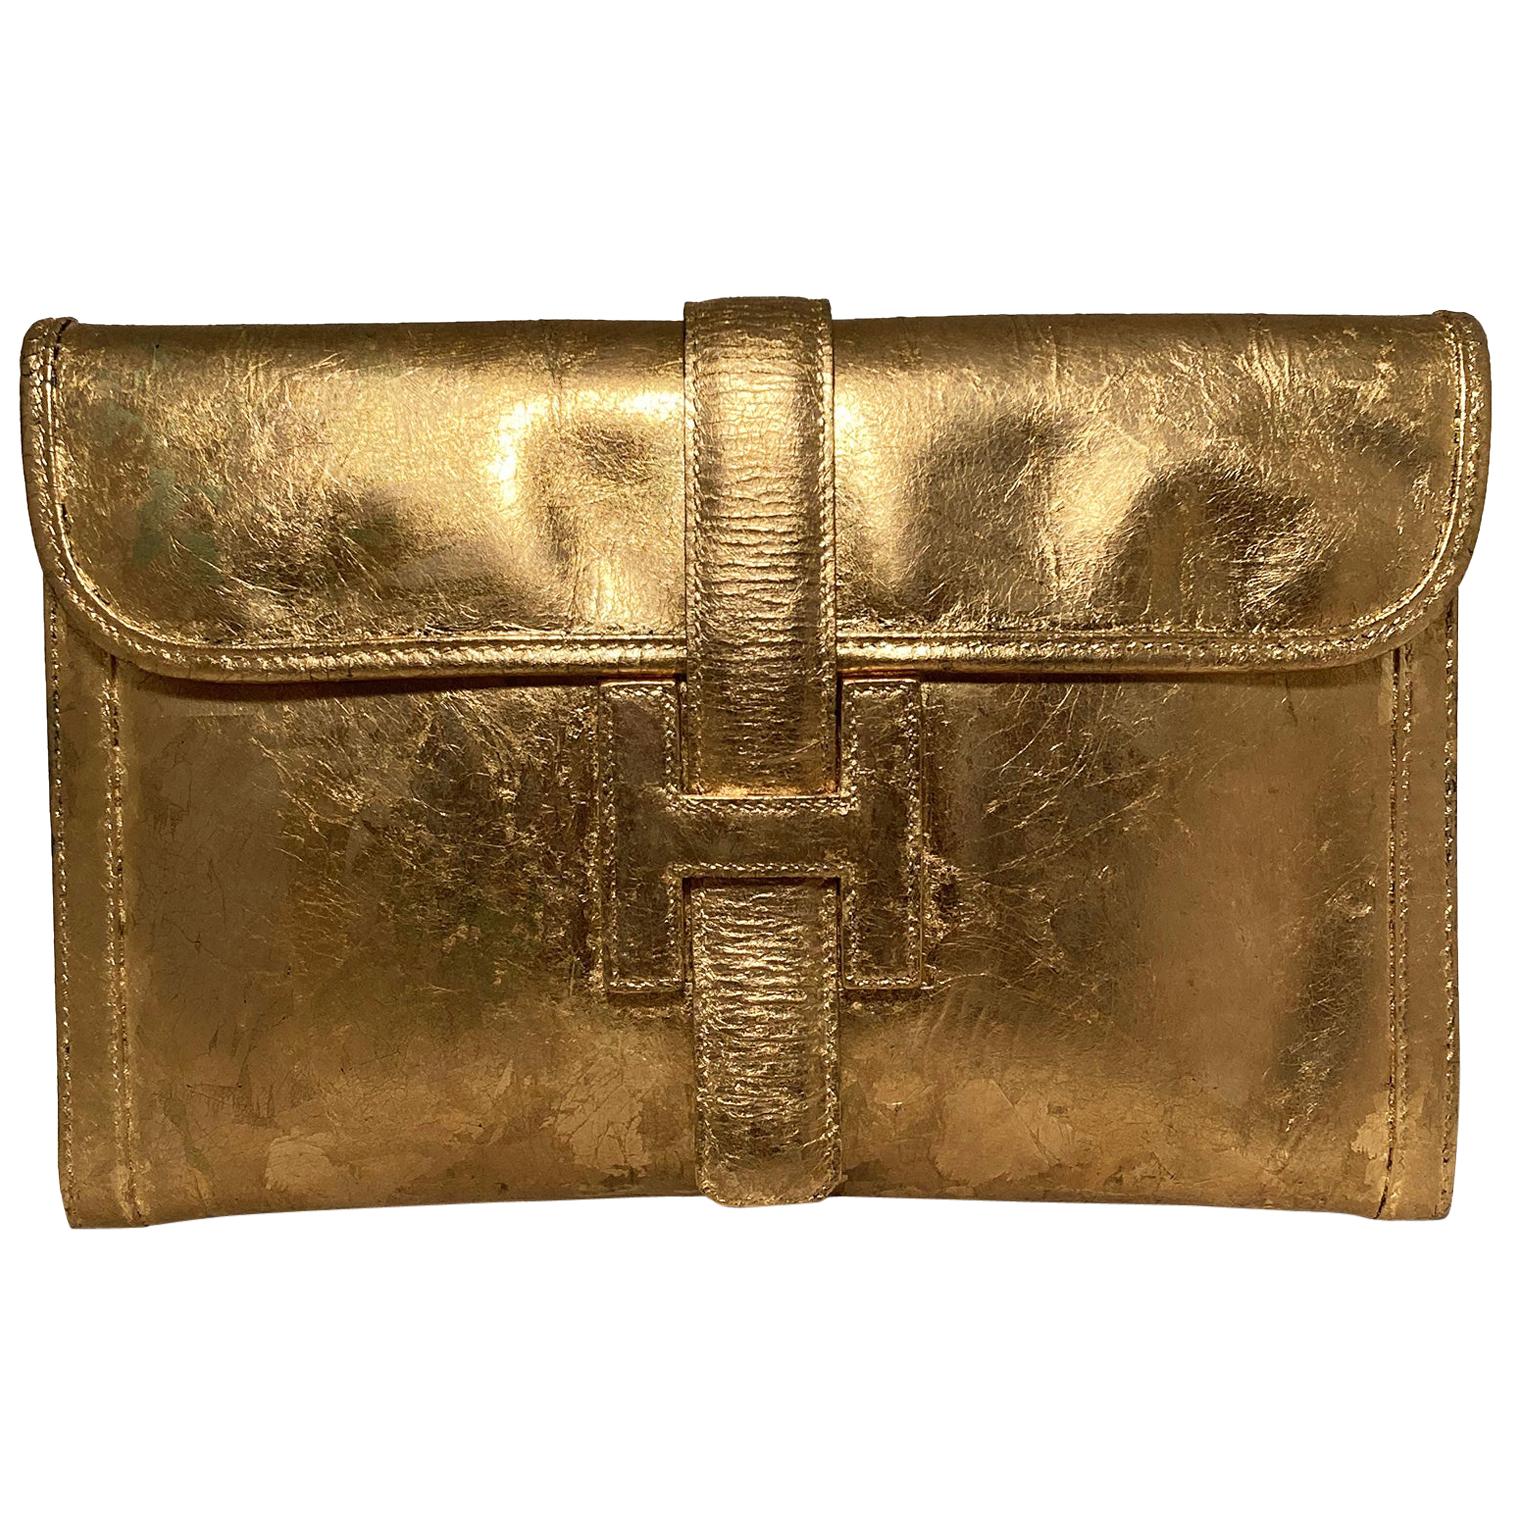 Vintage Hermes Gold Foil Jige Pm Clutch